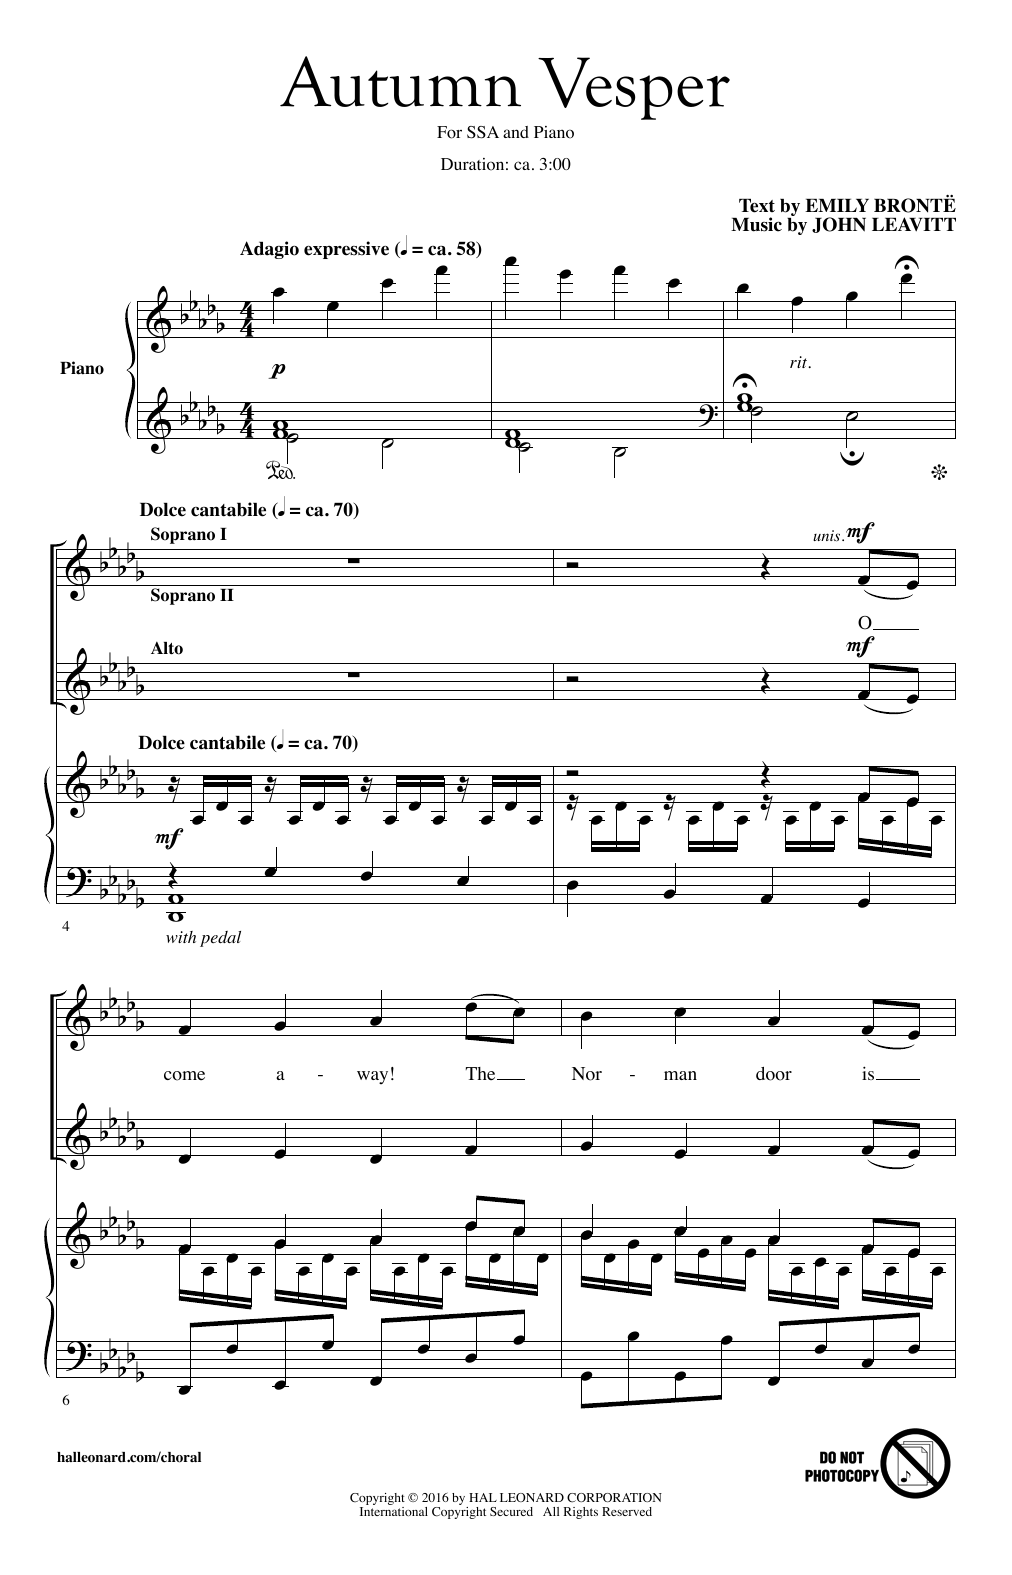 John Leavitt Autumn Vesper Sheet Music Notes & Chords for SSA - Download or Print PDF